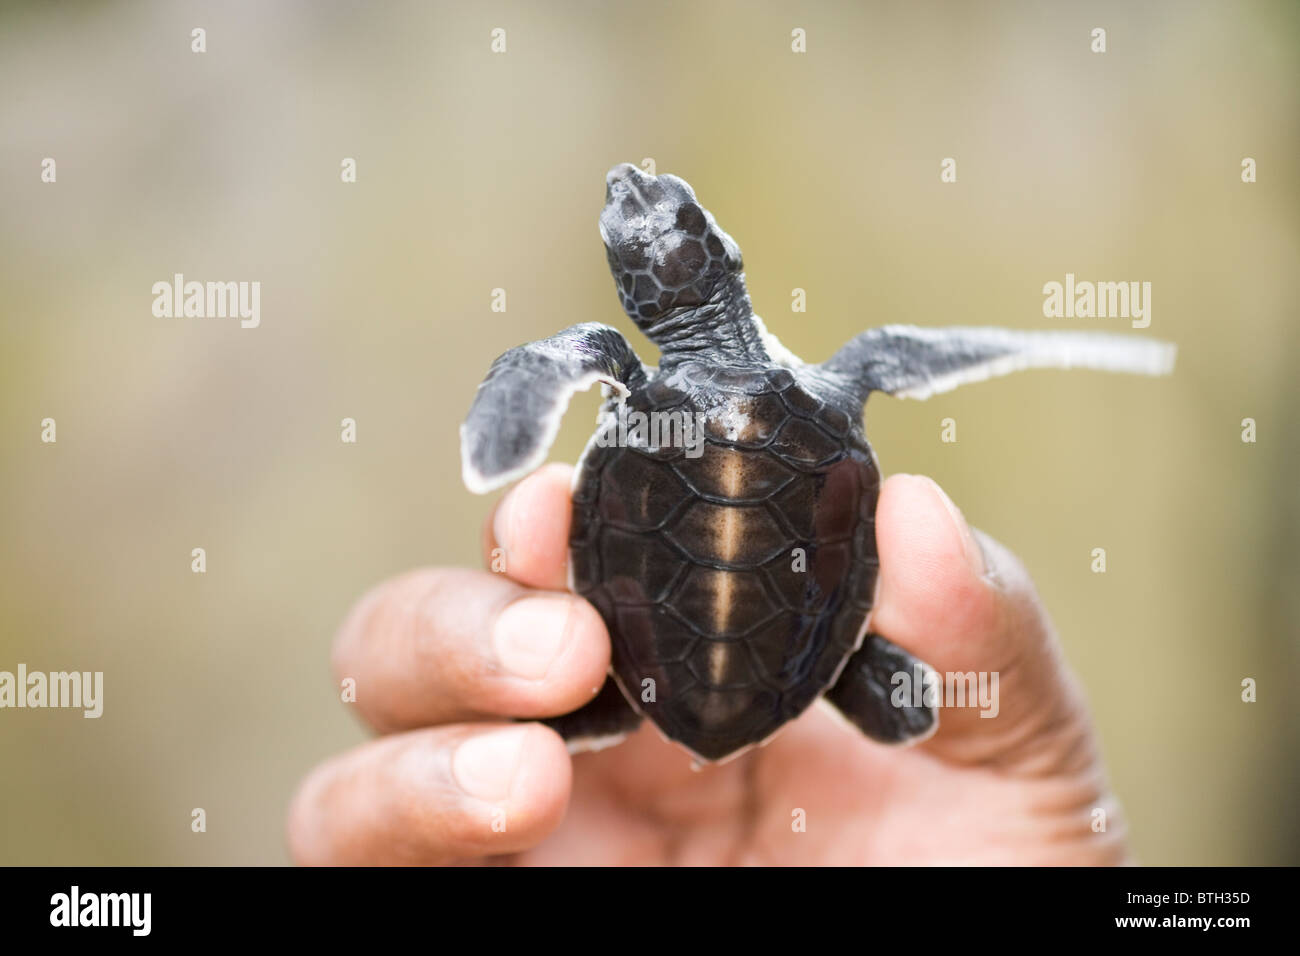 La tortue verte (Chelonia mydas). Hatchling tenu dans une main, montrant le dos shell, à l'endroit ou de la carapace. Banque D'Images